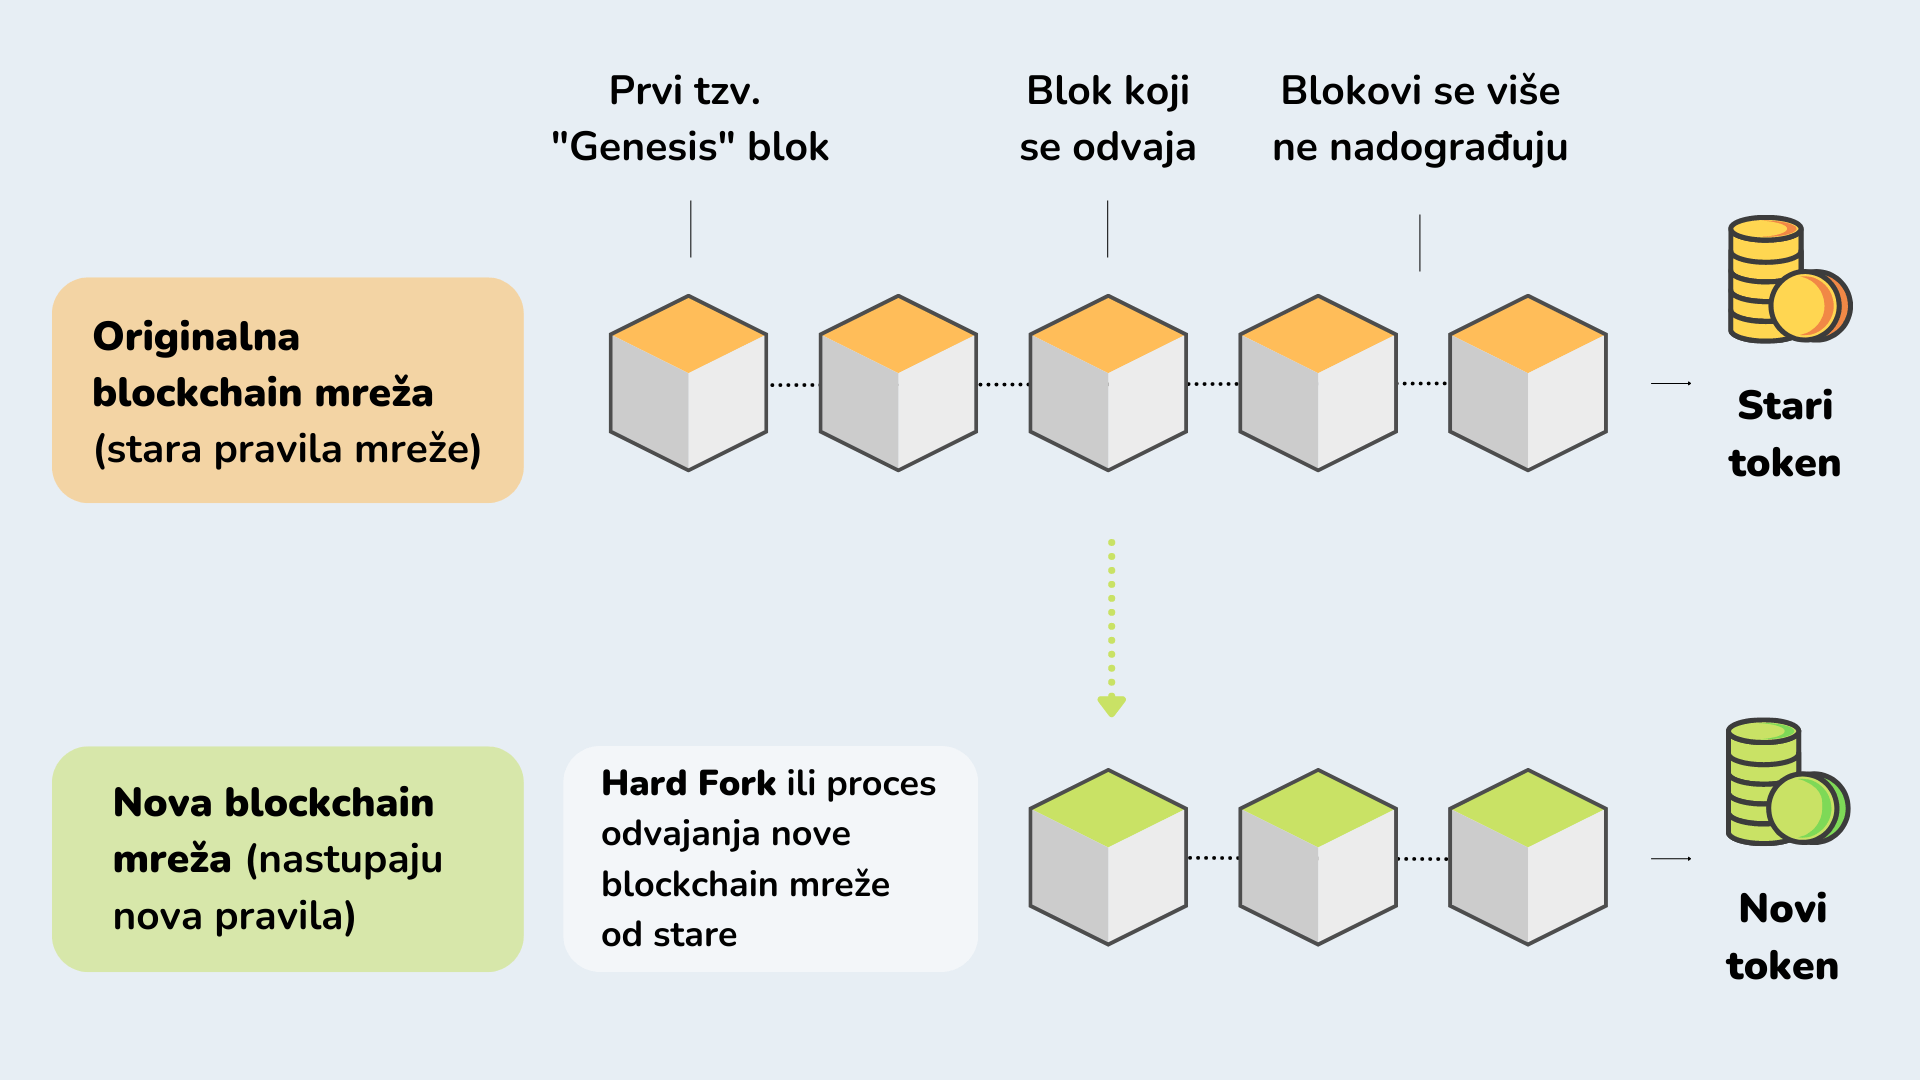 Vizualni prikaz načina putem kojeg se odvija Hard Fork blockchain mreže.